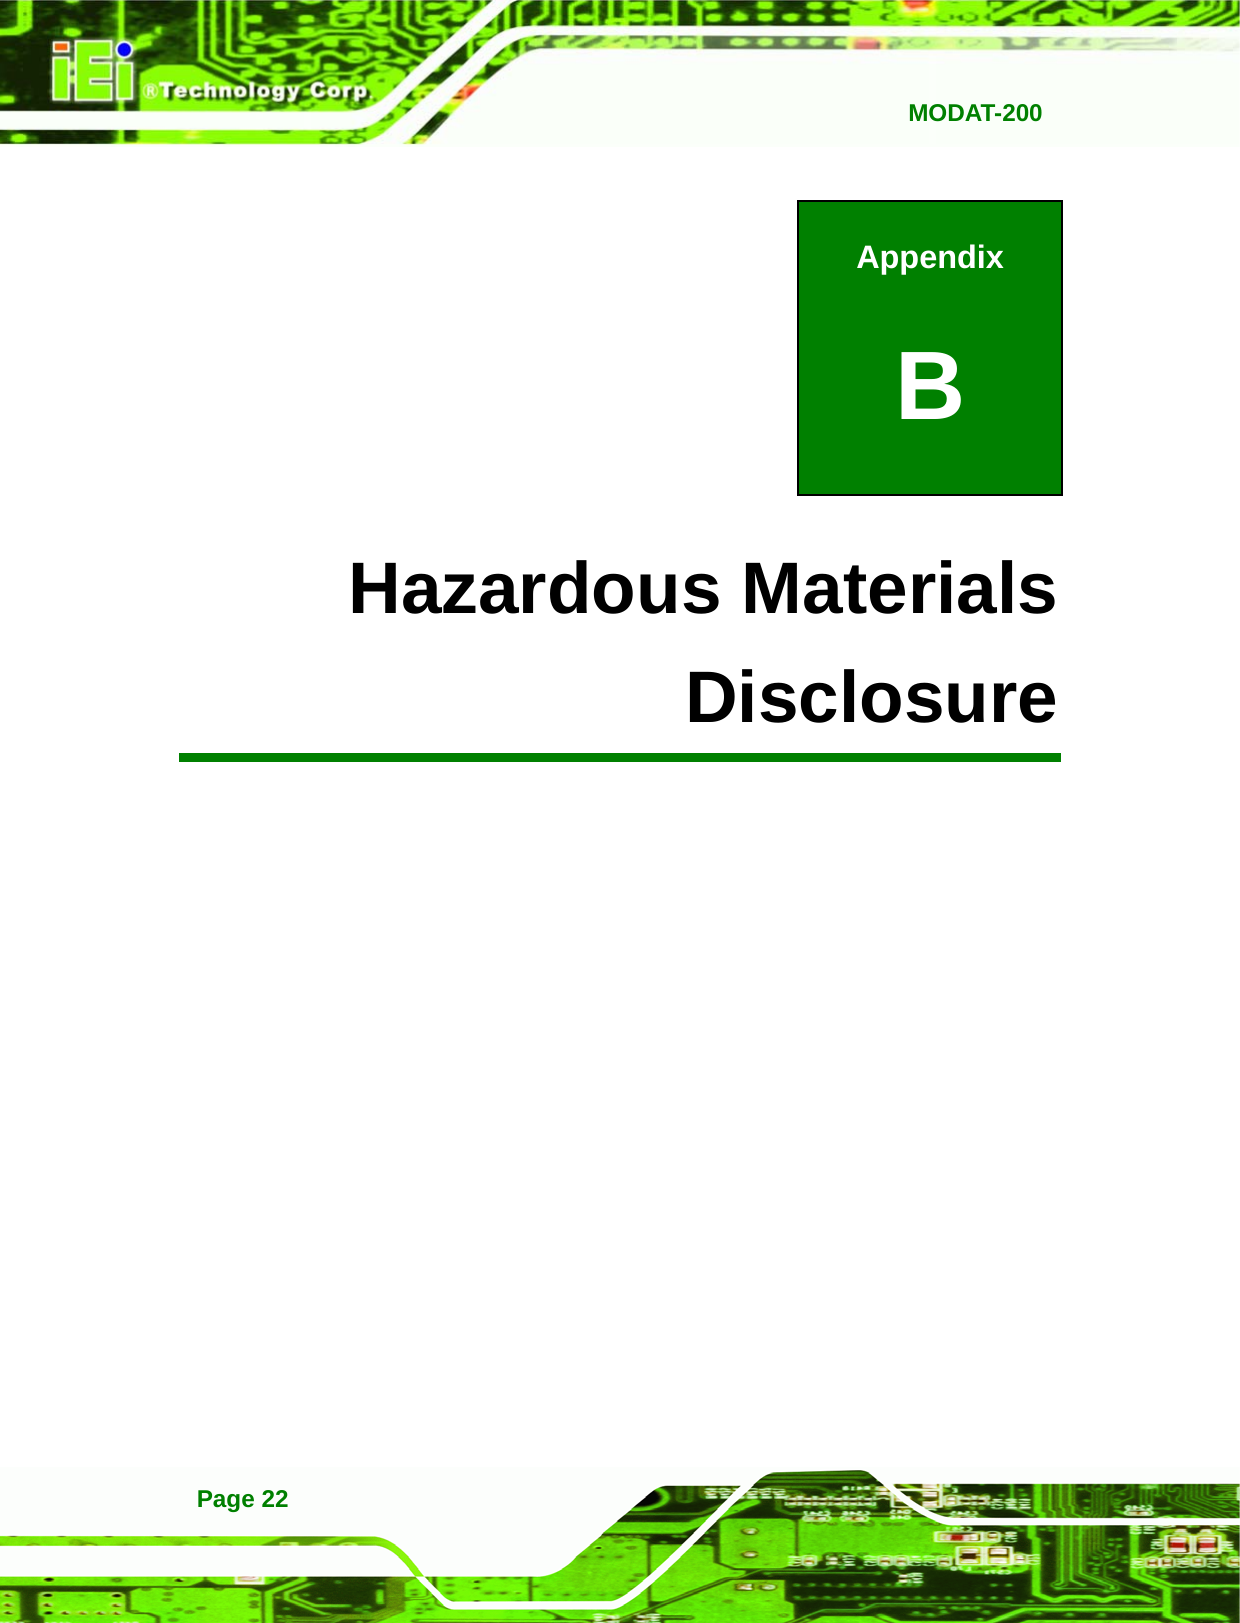   MODAT-200Page 22 Appendix B B Hazardous Materials Disclosure 